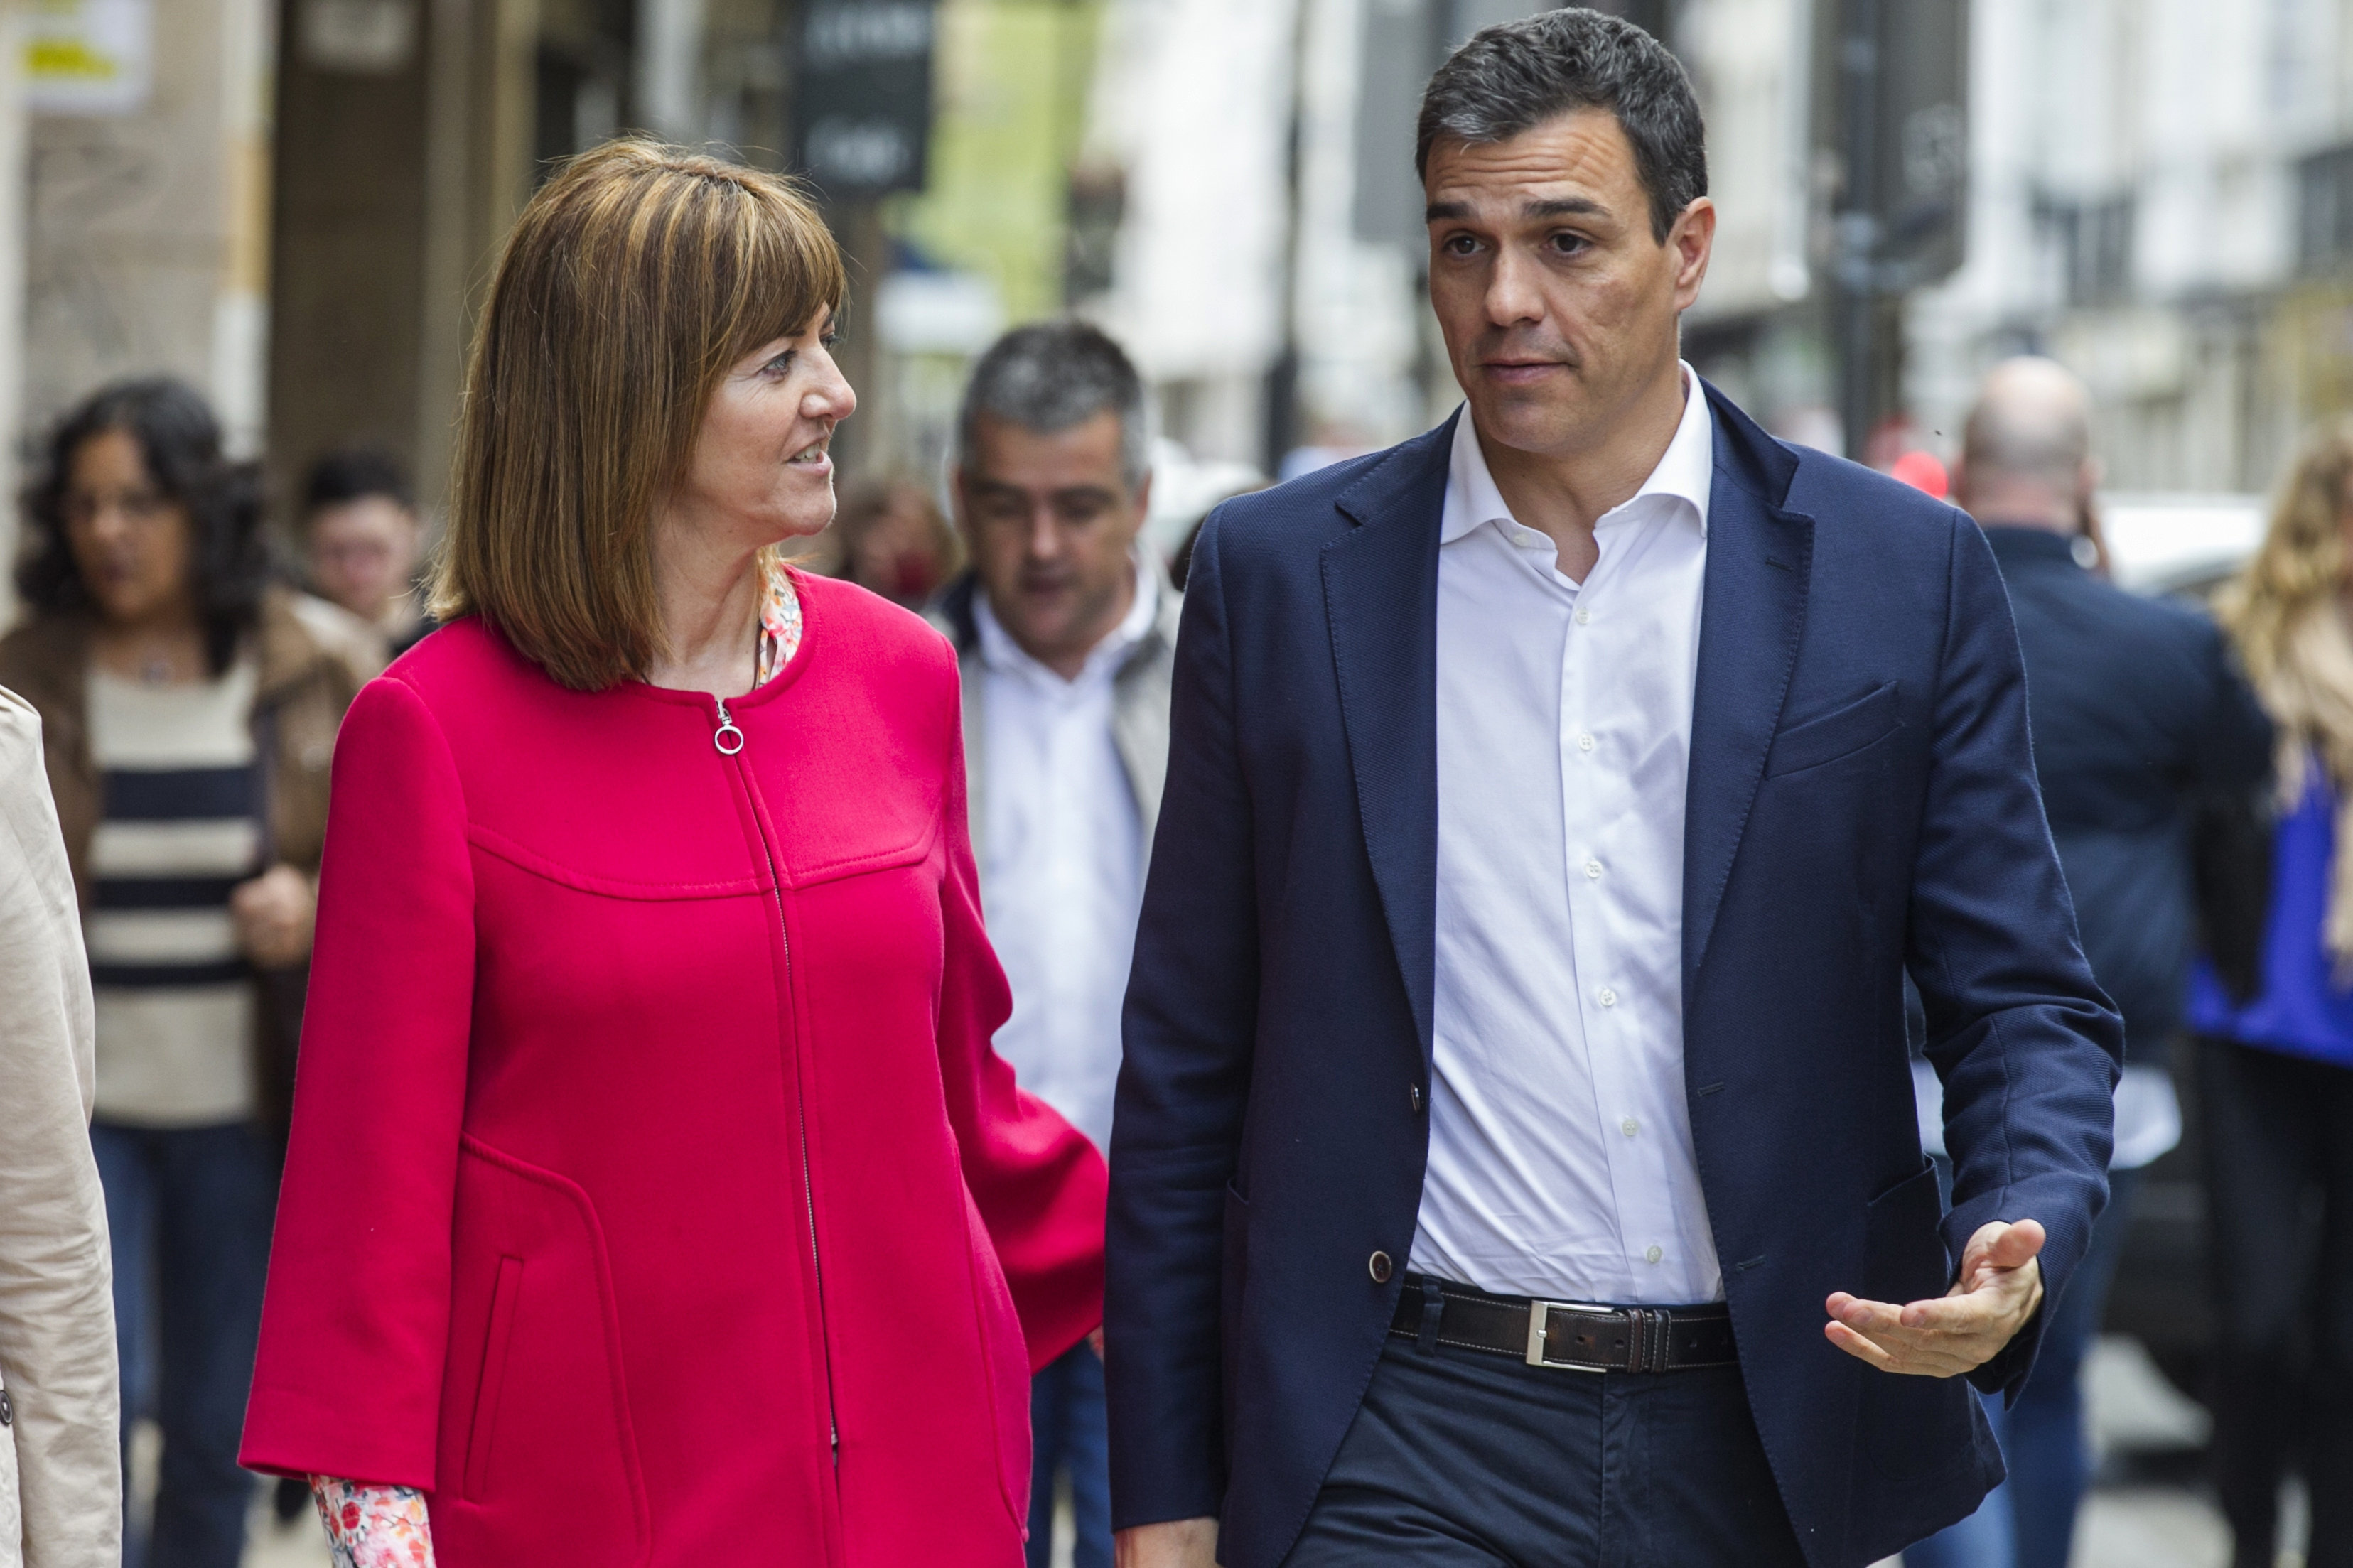 El secretario general del PSOE, Pedro Sánchez, se dirige junto a la líder del PSE-EE, Idoia Mendia, a un acto político en el que ha participado hoy en Vitoria.